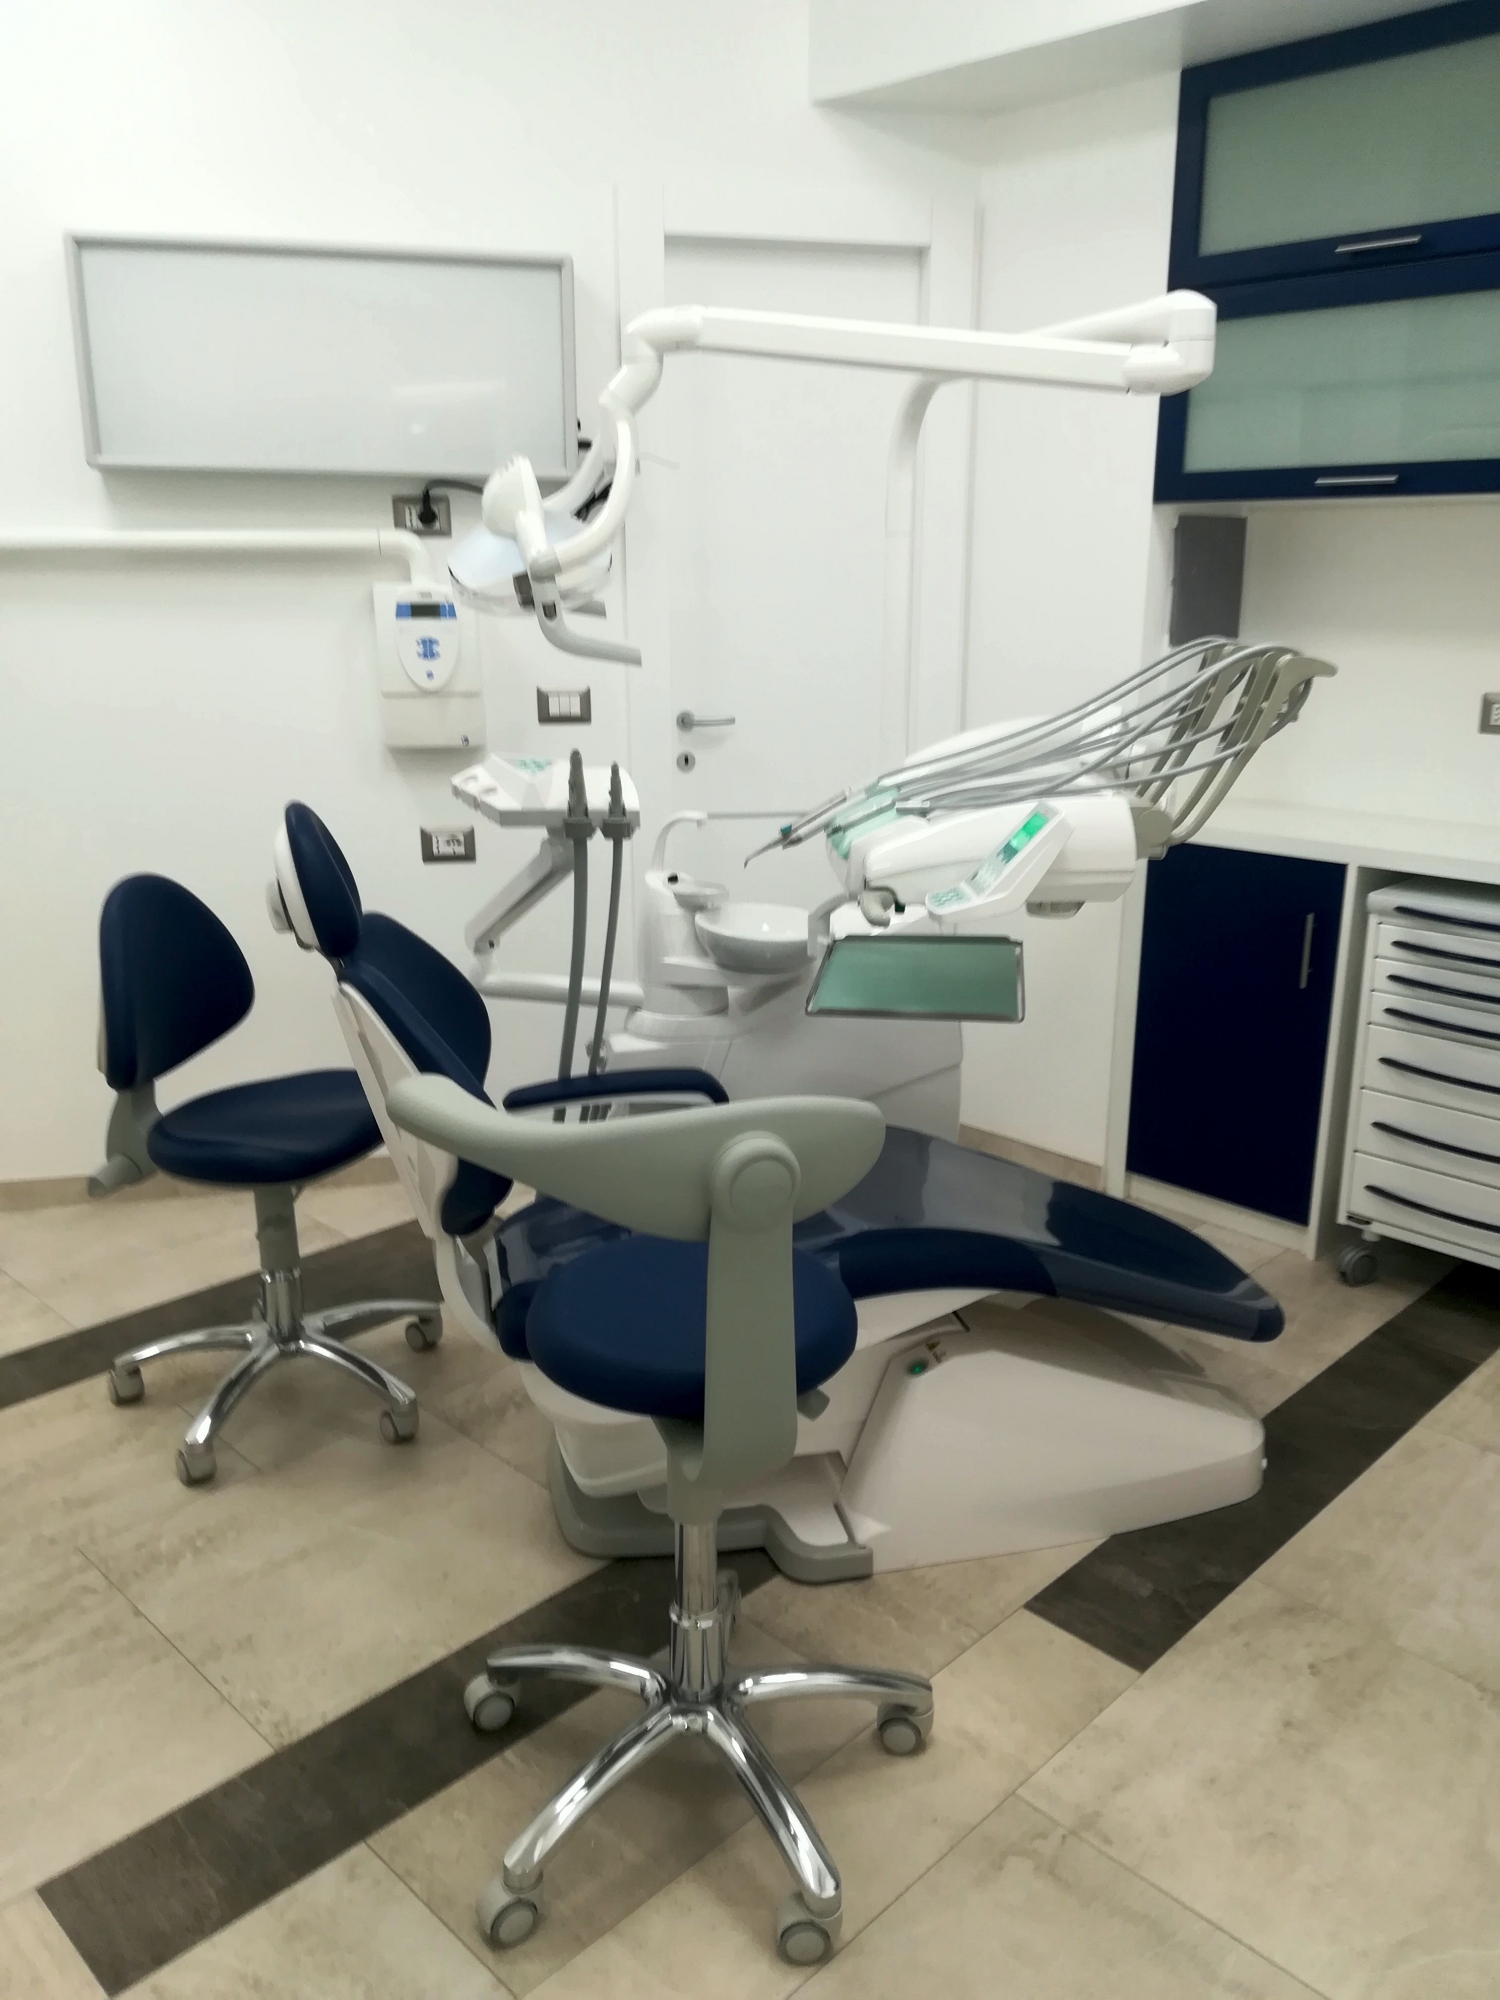 Ristrutturazione studio dentistico - gabinetto odontoiatrico